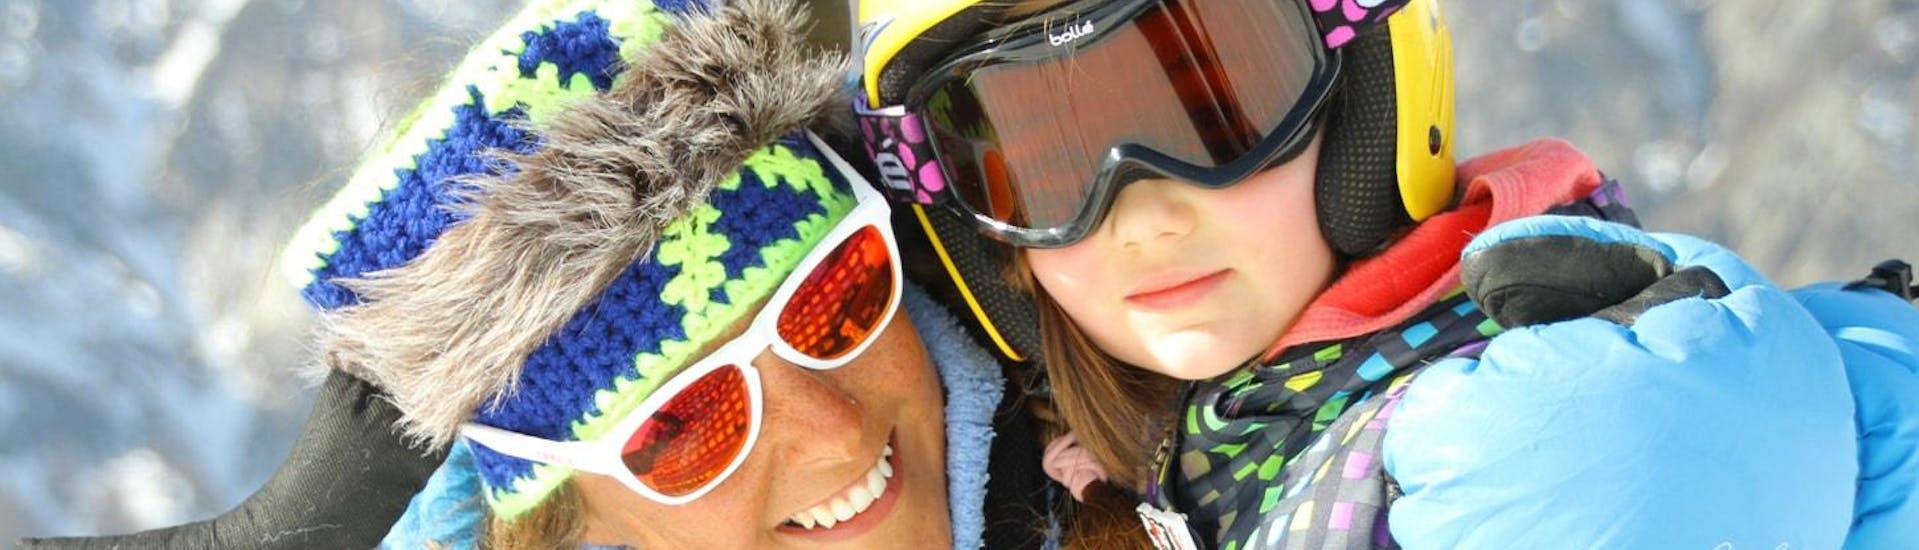 Mädchen mit seiner Skilehrerin von der Skischule Scuola di Sci Bardonecchia haben Spaß im Kinder Skikurs (4-14 J.) - Fasching.